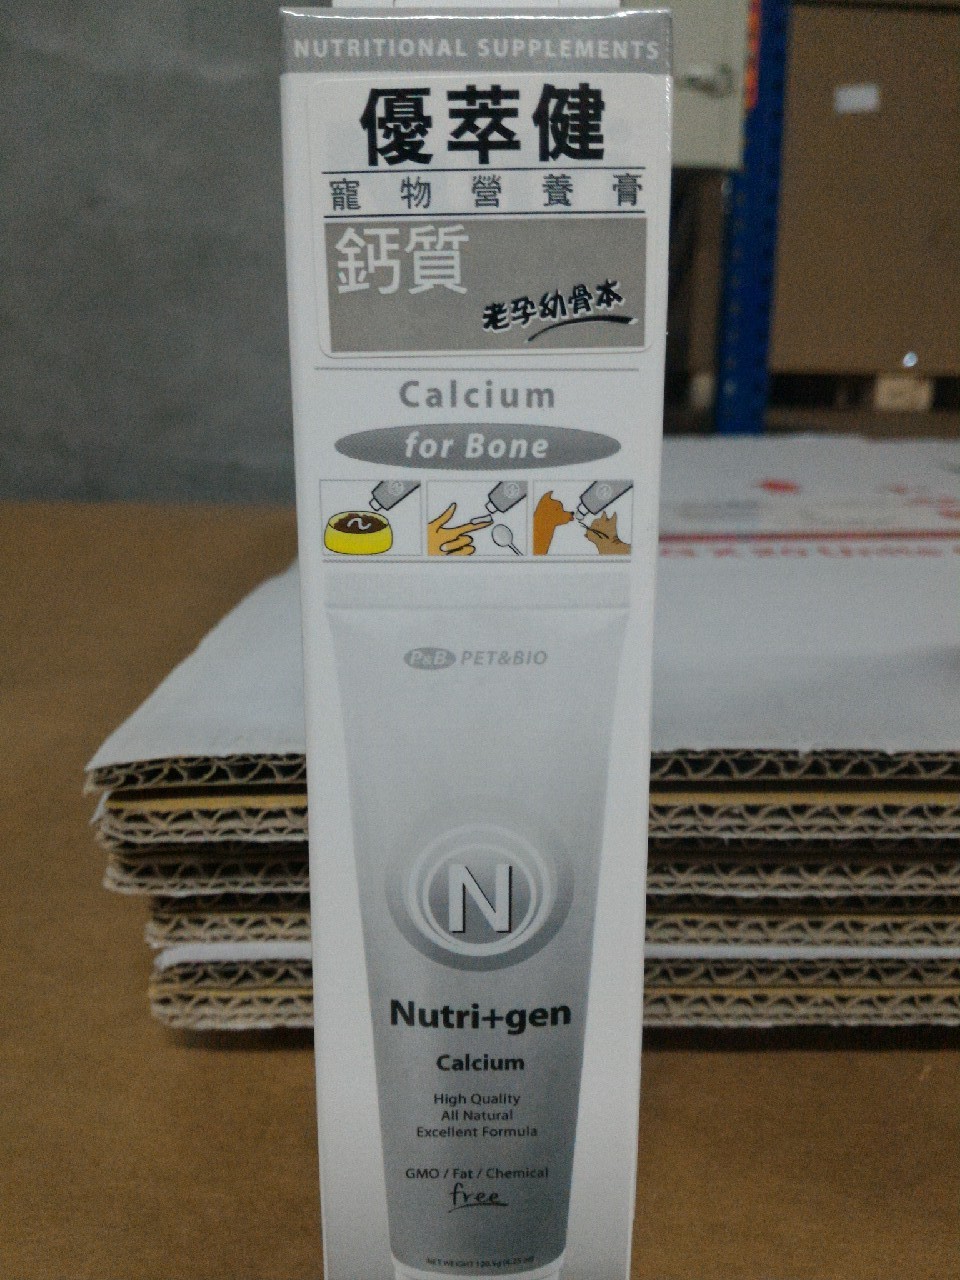 優萃健寵物營養膏-鈣質
Nutri+gen Calcium